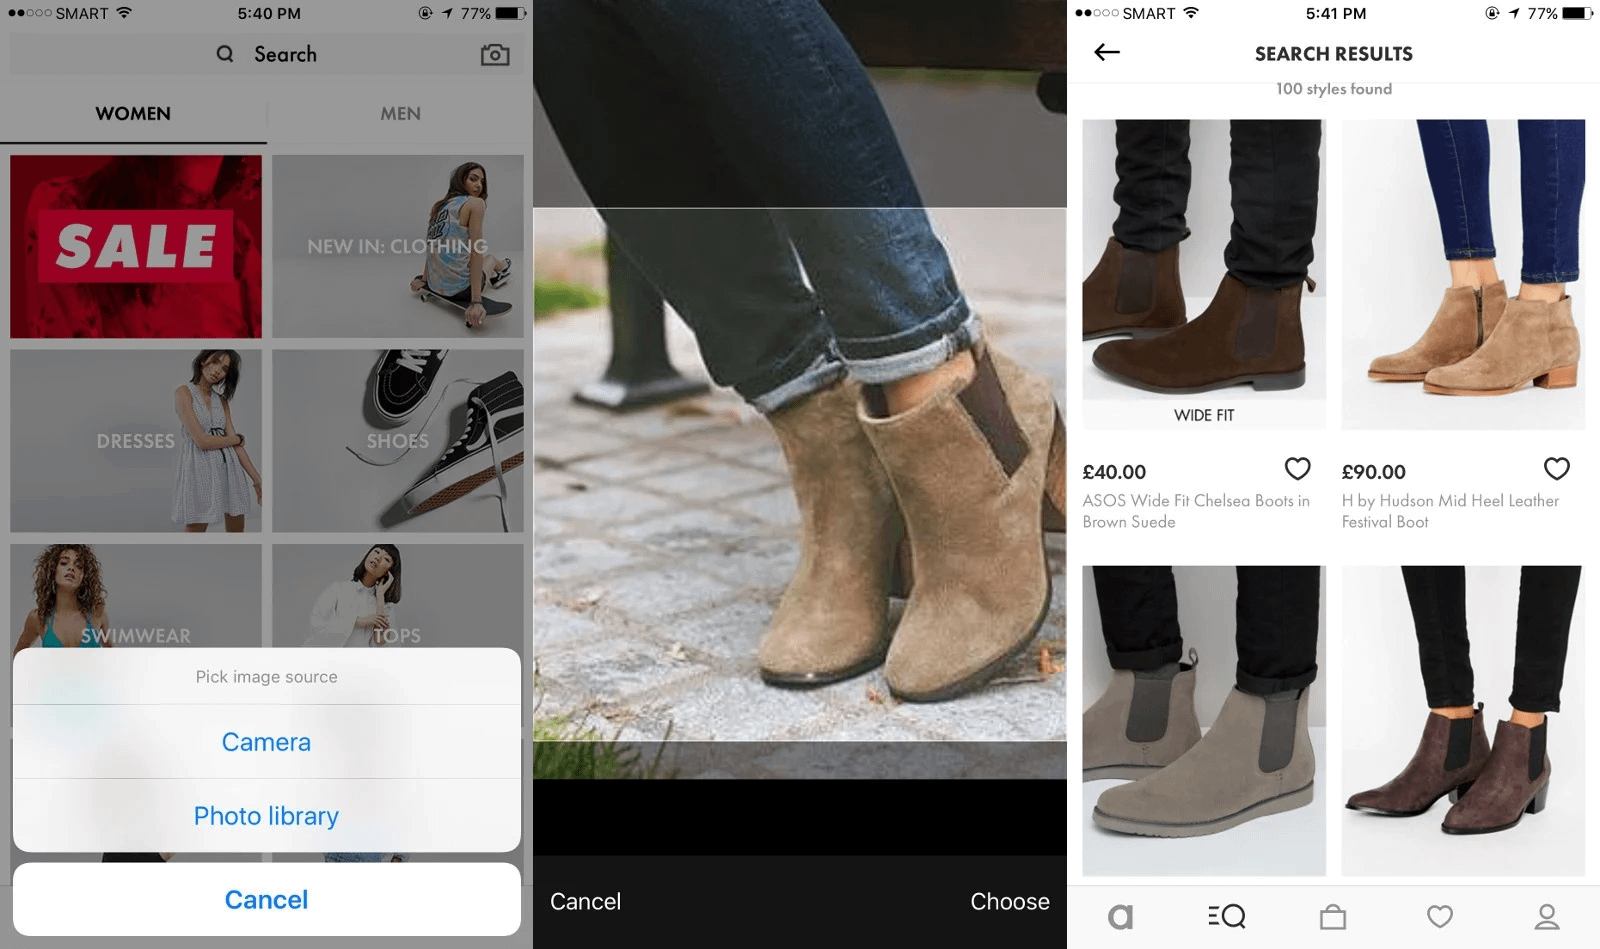 ASOS - онлайн магазин модной одежды и аксессуаров — предлагает функцию "Style Match", позволяющую пользователям загрузить изображение желаемого товара или стиля, чтобы найти аналогичные вещи в приложении магазина.